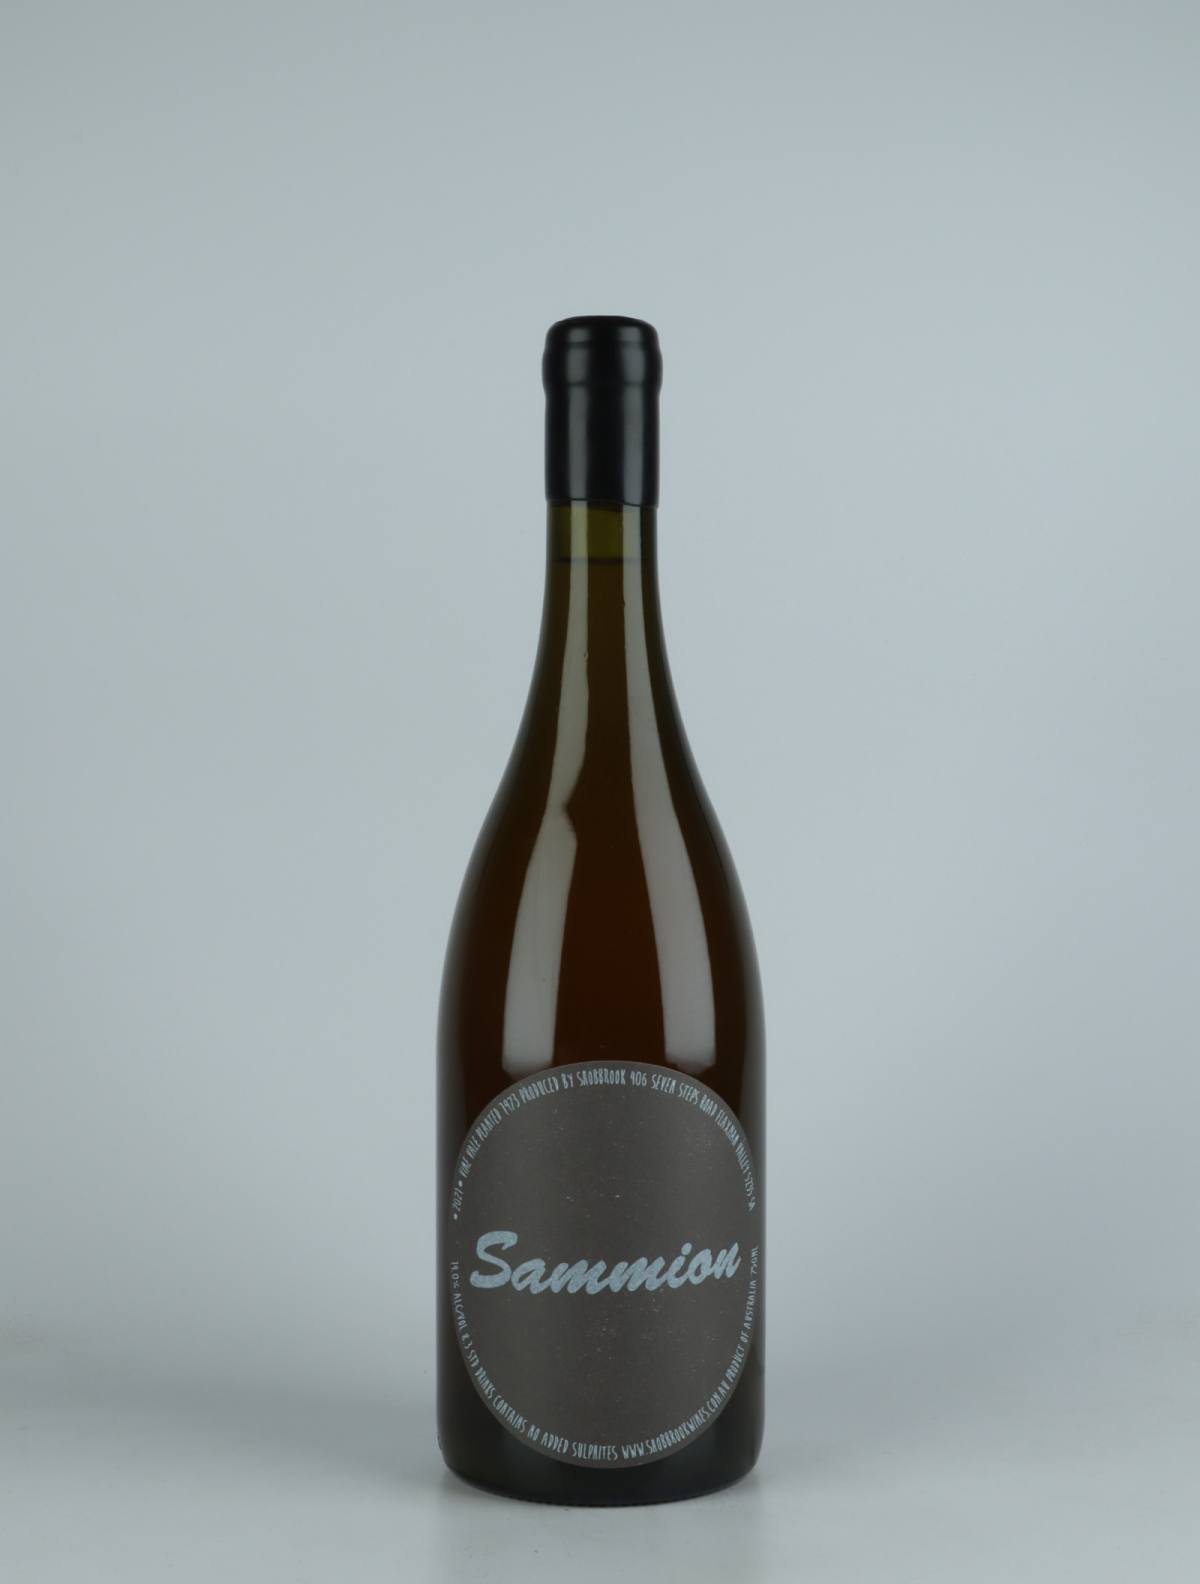 A bottle 2021 Sammion White wine from Tom Shobbrook, Adelaide Hills in Australia